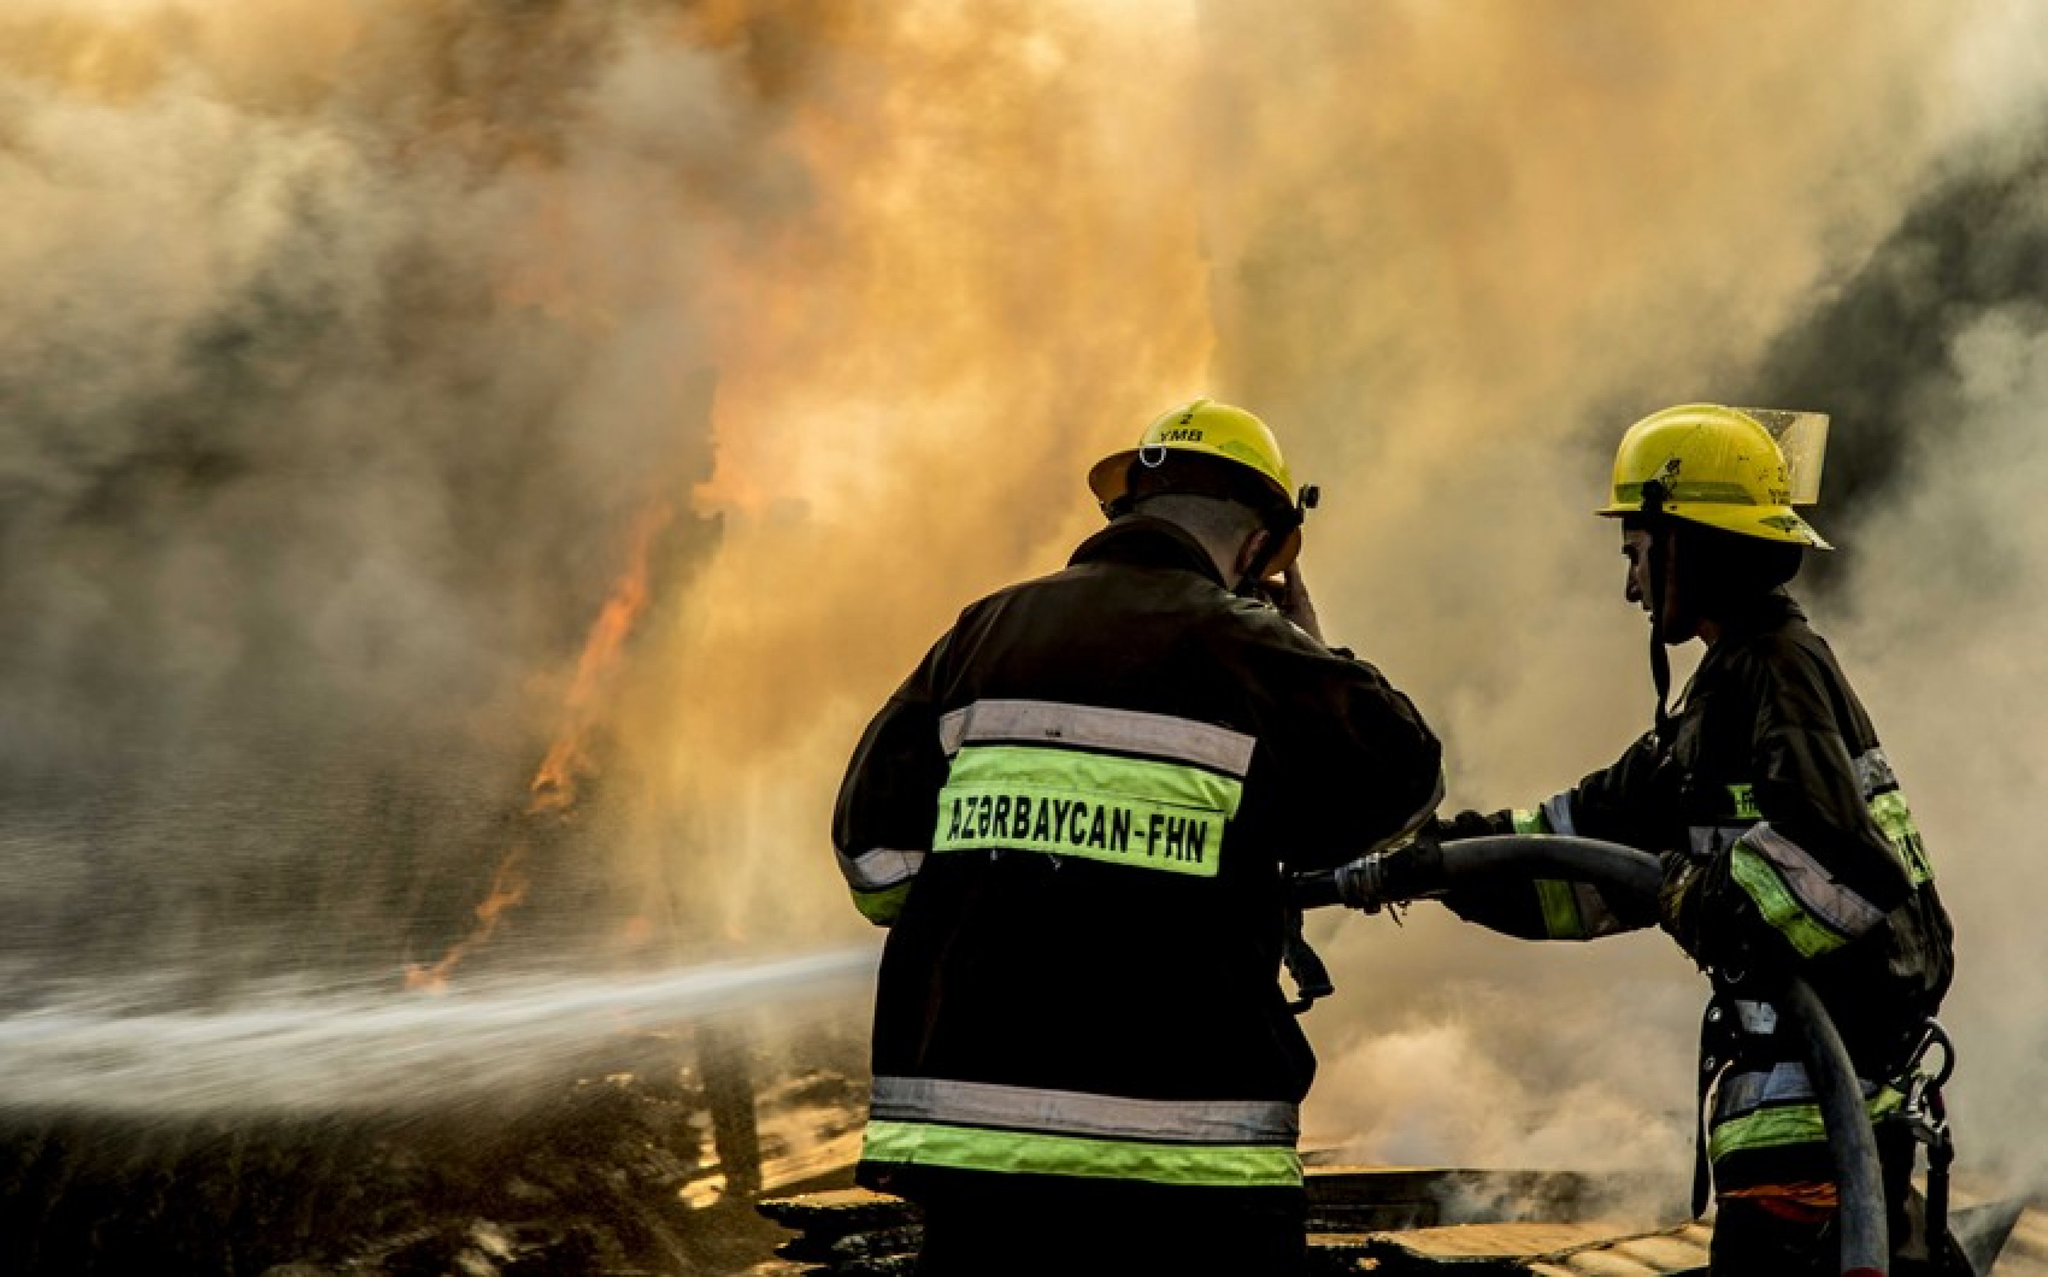 Сильный пожар в Сангачале: сгорели 50 тонн дизтоплива, повреждены грузовик и кафе - ОБНОВЛЕНО + ВИДЕО